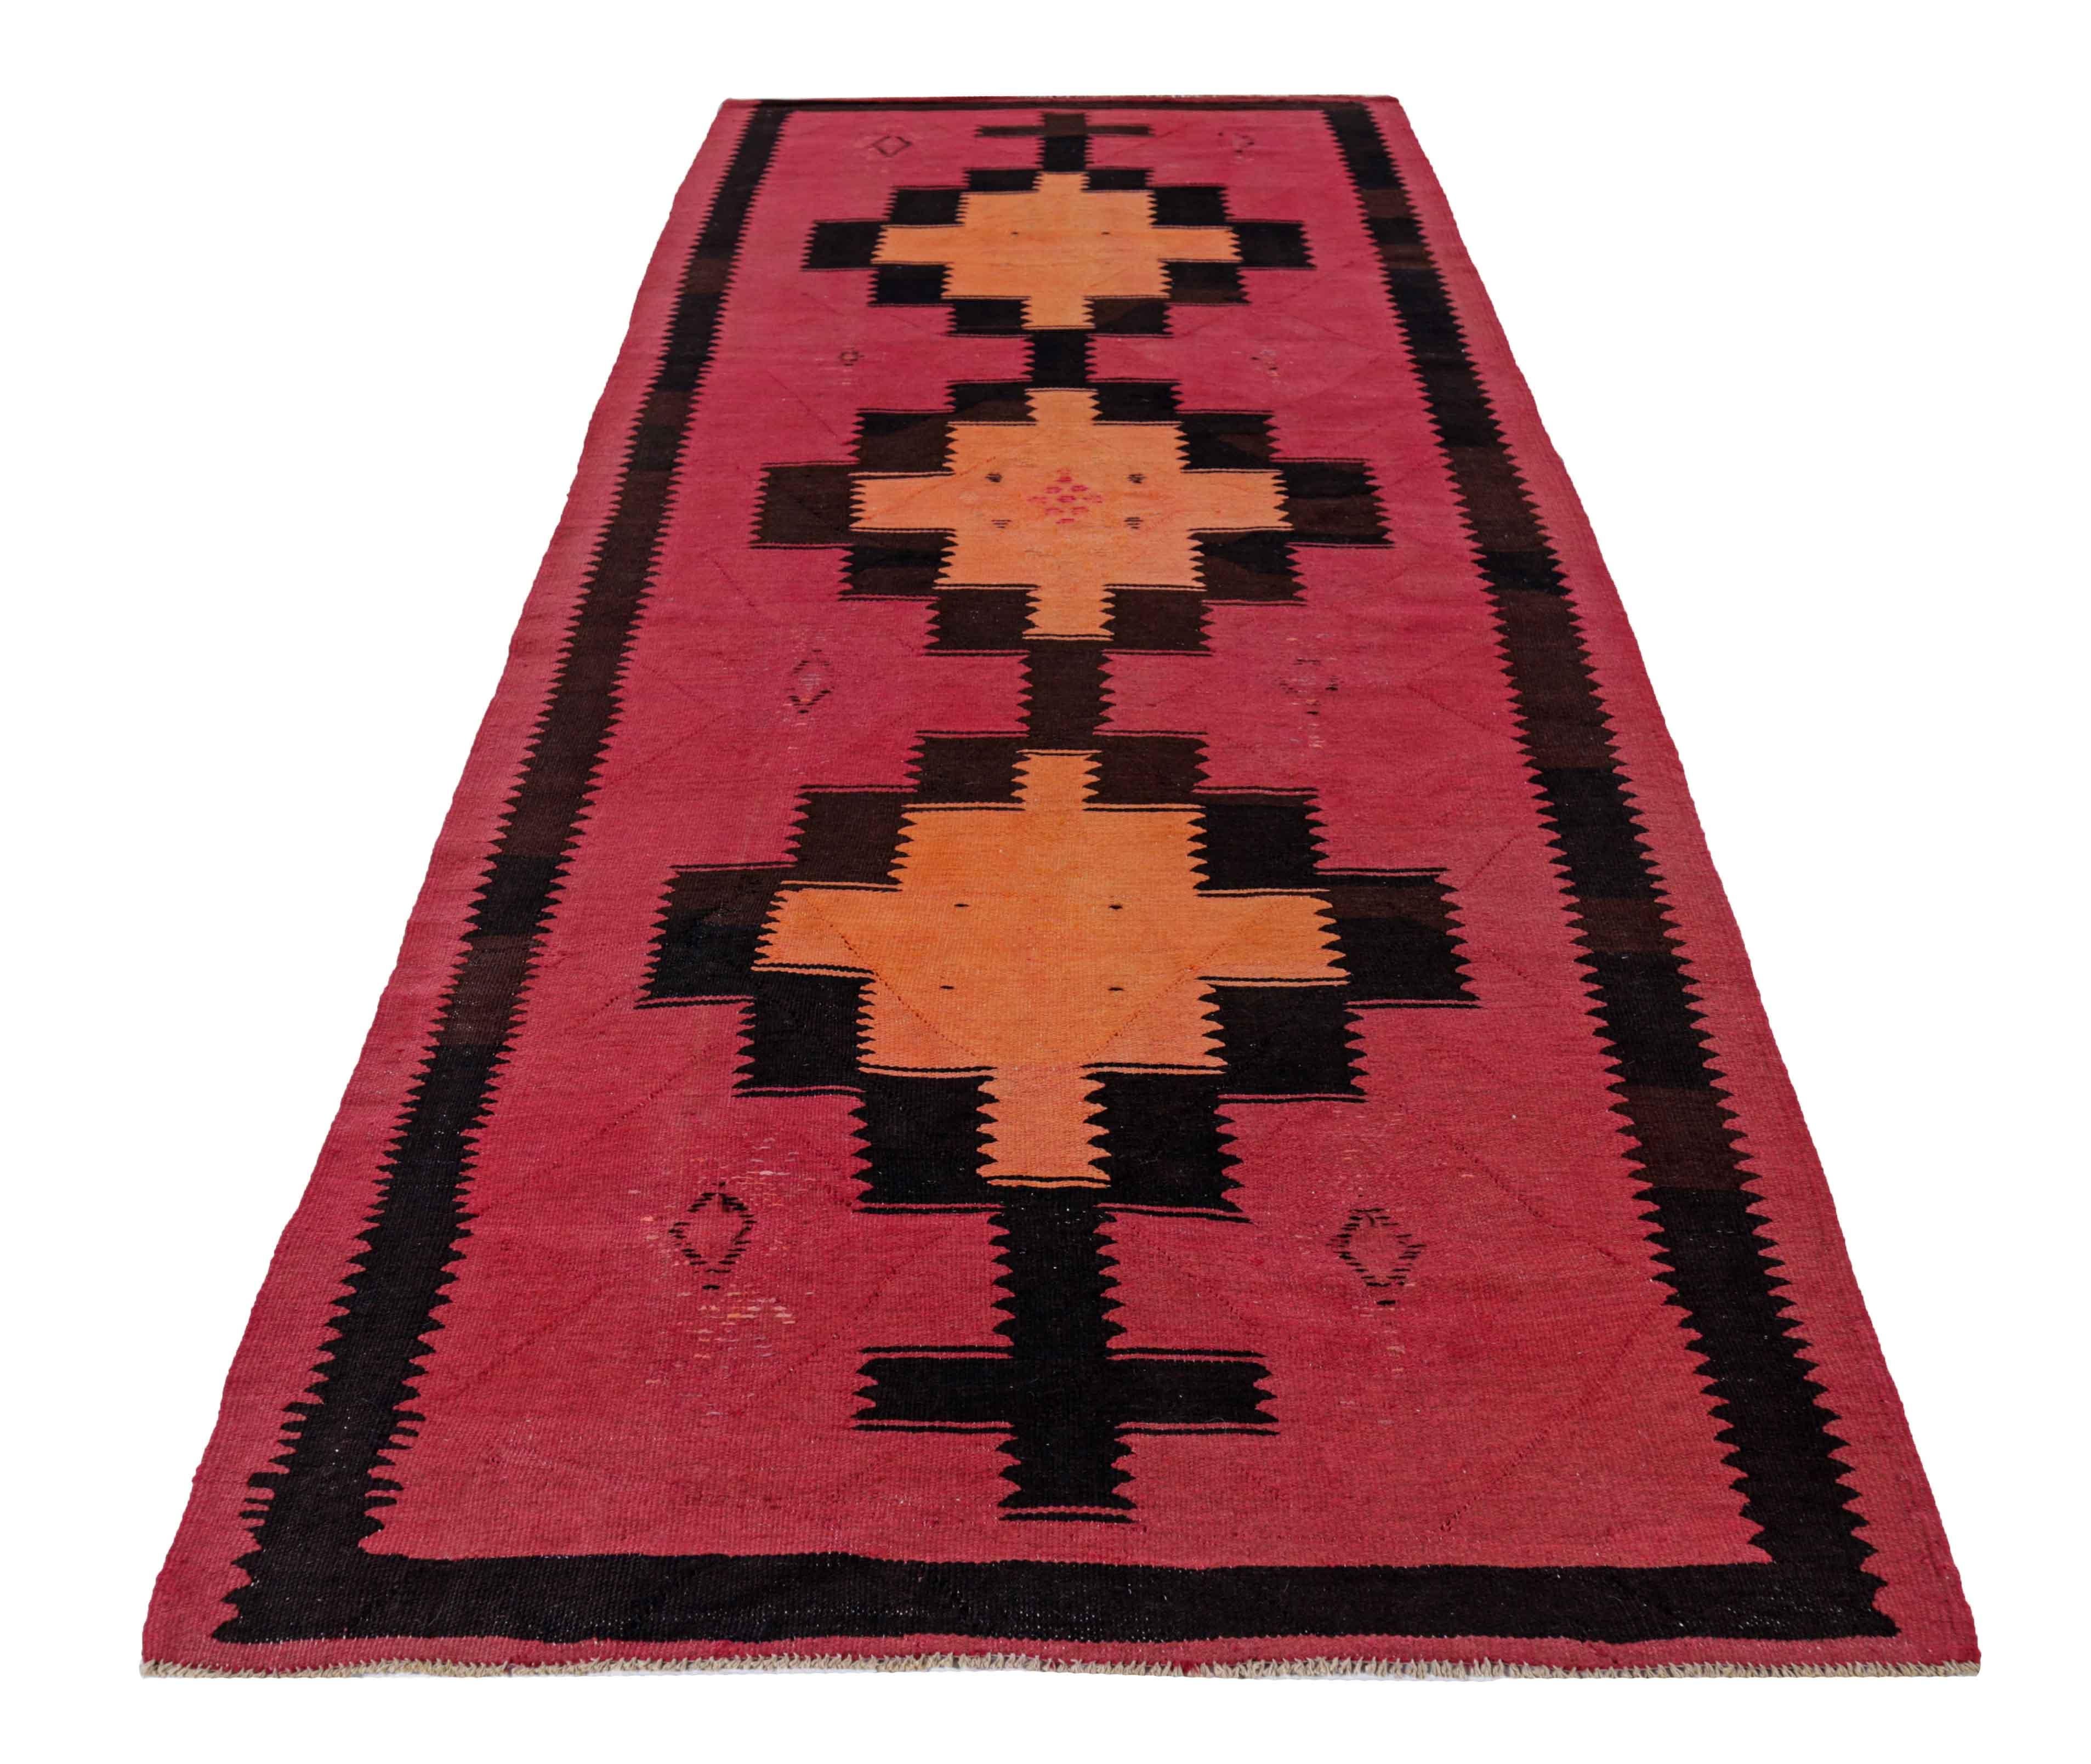 Antiker persischer Teppich, handgewebt aus feinster Schafswolle. Es ist mit natürlichen pflanzlichen Farbstoffen gefärbt, die für Menschen und Haustiere sicher sind. Es handelt sich um ein traditionelles Kilim-Design, das von erfahrenen